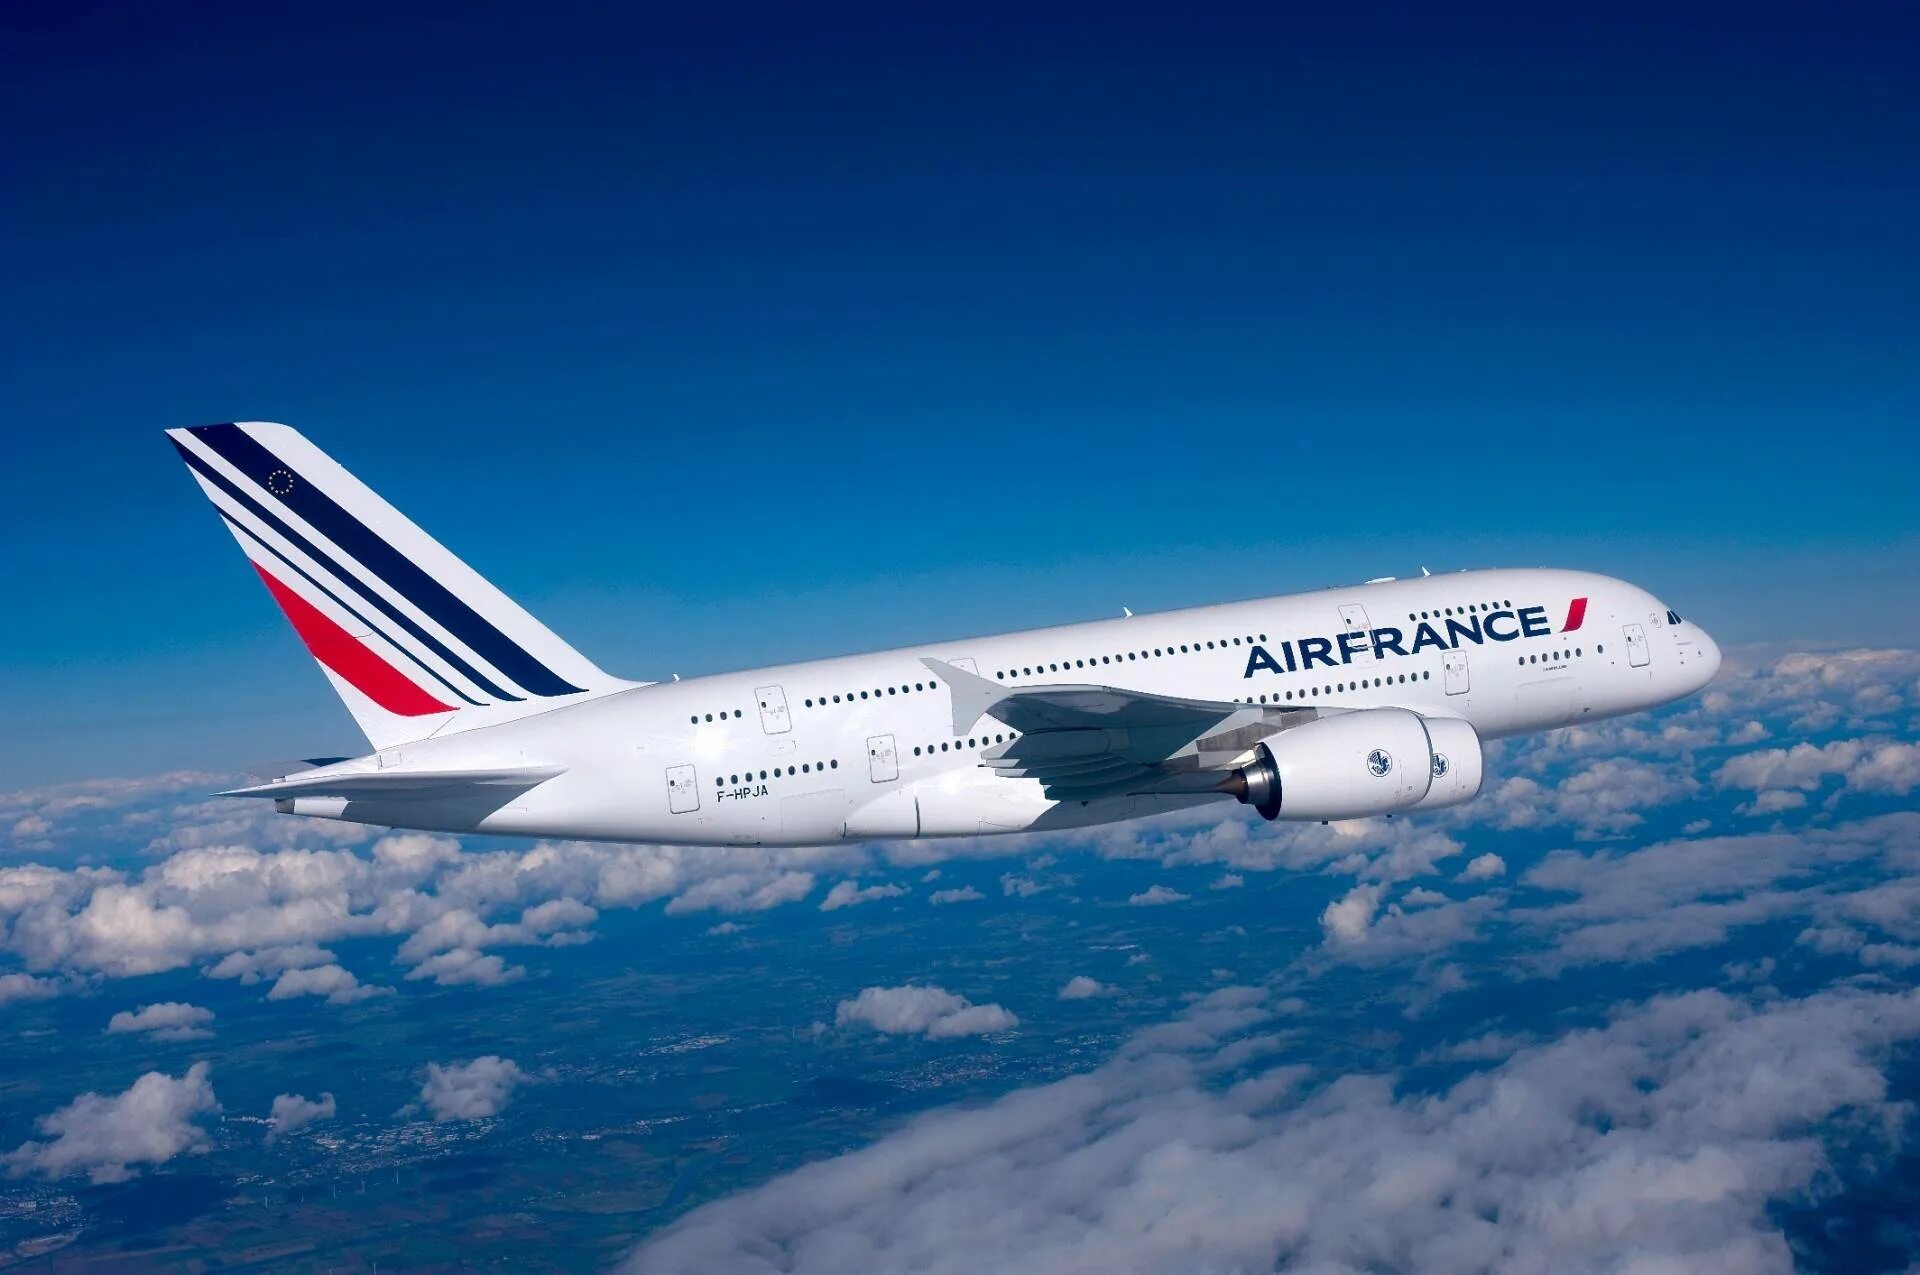 Эйр г. Airbus a380 Air France. Эйр Франс - КЛМ ("Эйр Франс" - КЛМ) Франция, Голландия. Самолëты Эйр Франс. Air France a380 в воздухе.